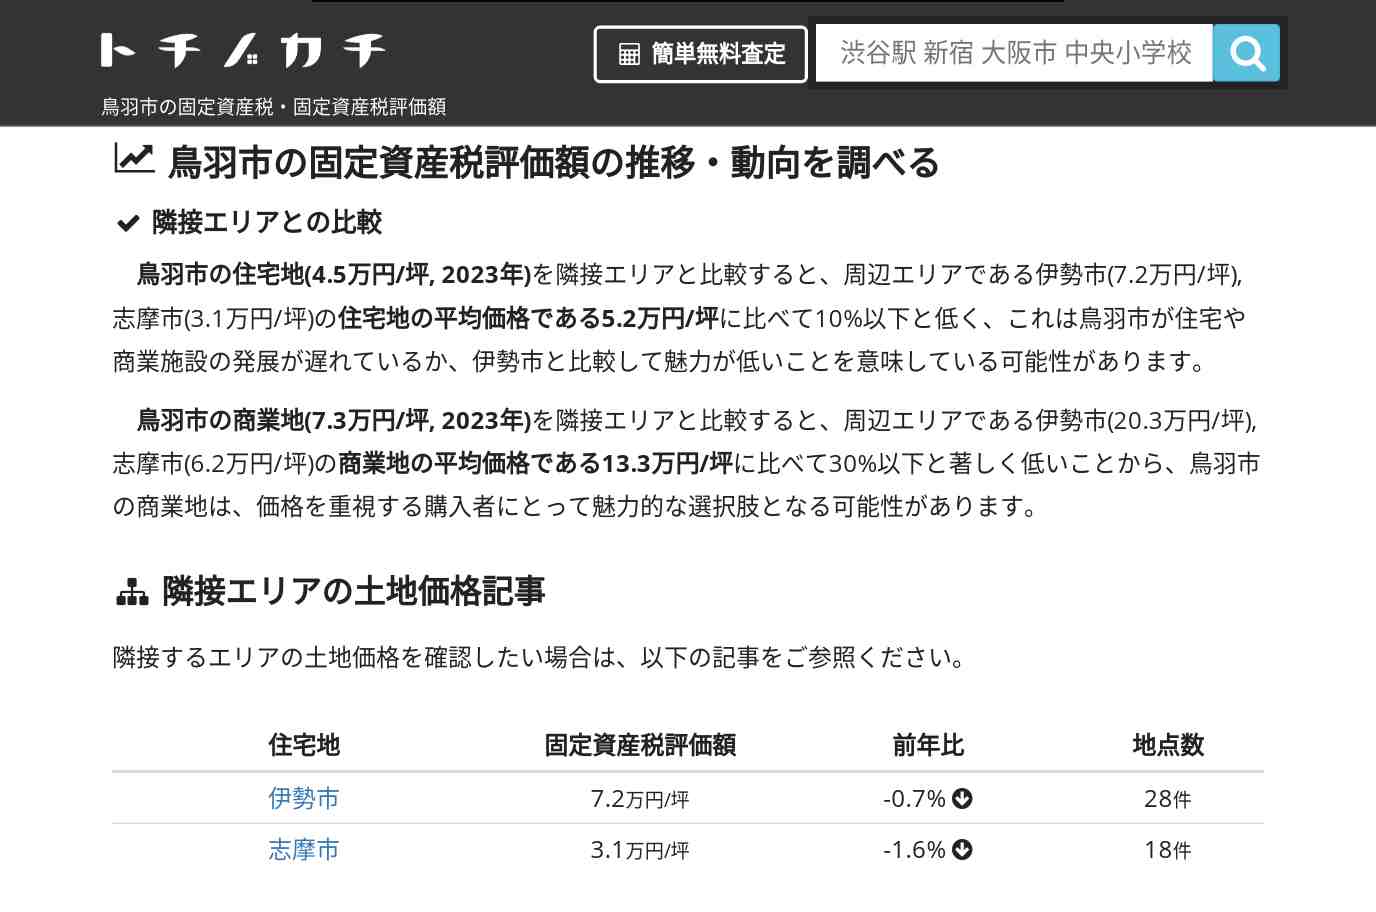 菅島小学校(三重県 鳥羽市)周辺の固定資産税・固定資産税評価額 | トチノカチ